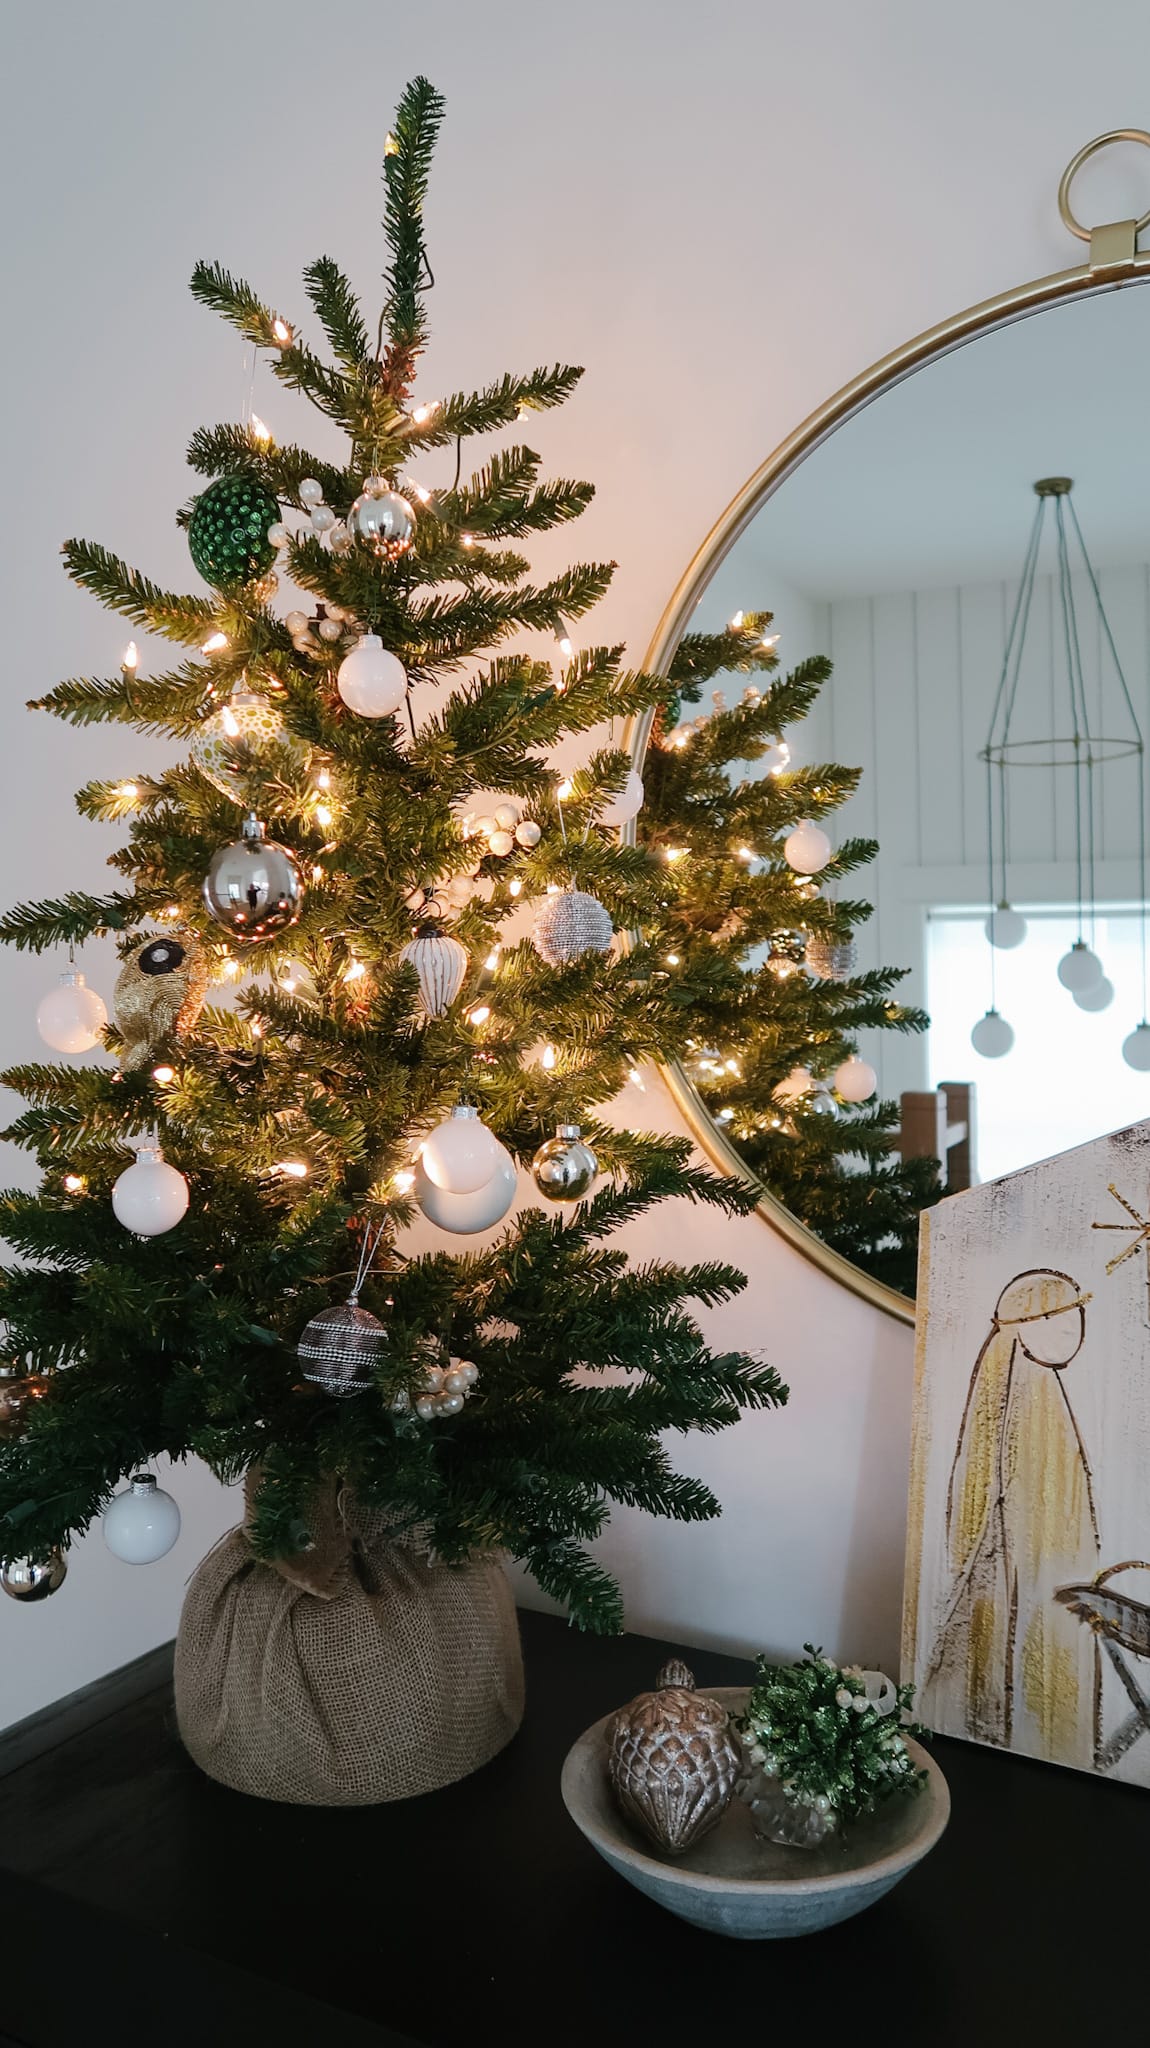 Christmas Tree, Ornaments, Nativity Art
